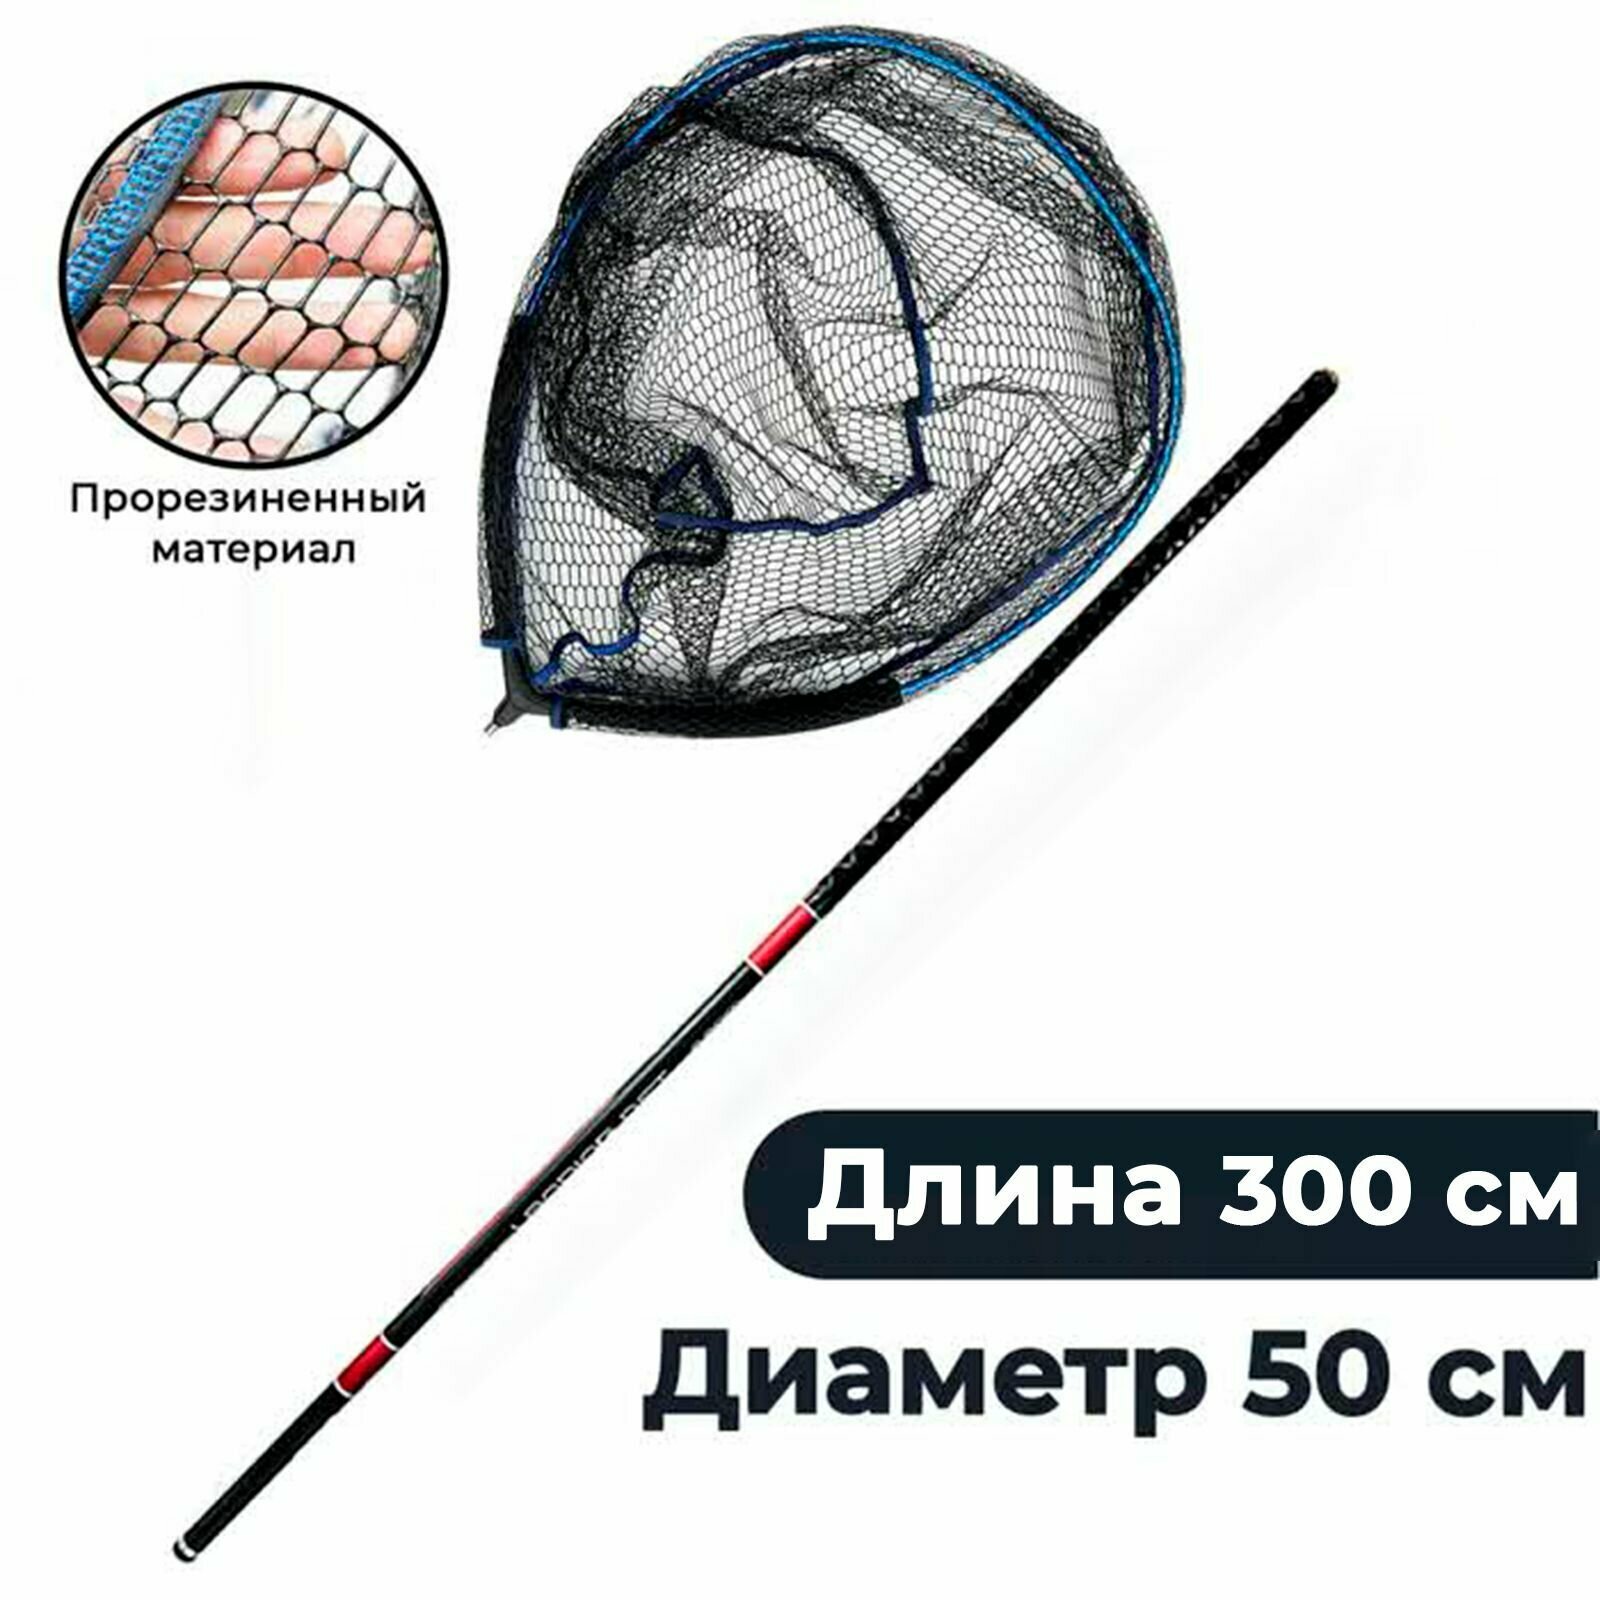 Подсачек плавающий рыболовный 50 на 55 с карбоновой ручкой до 3 м